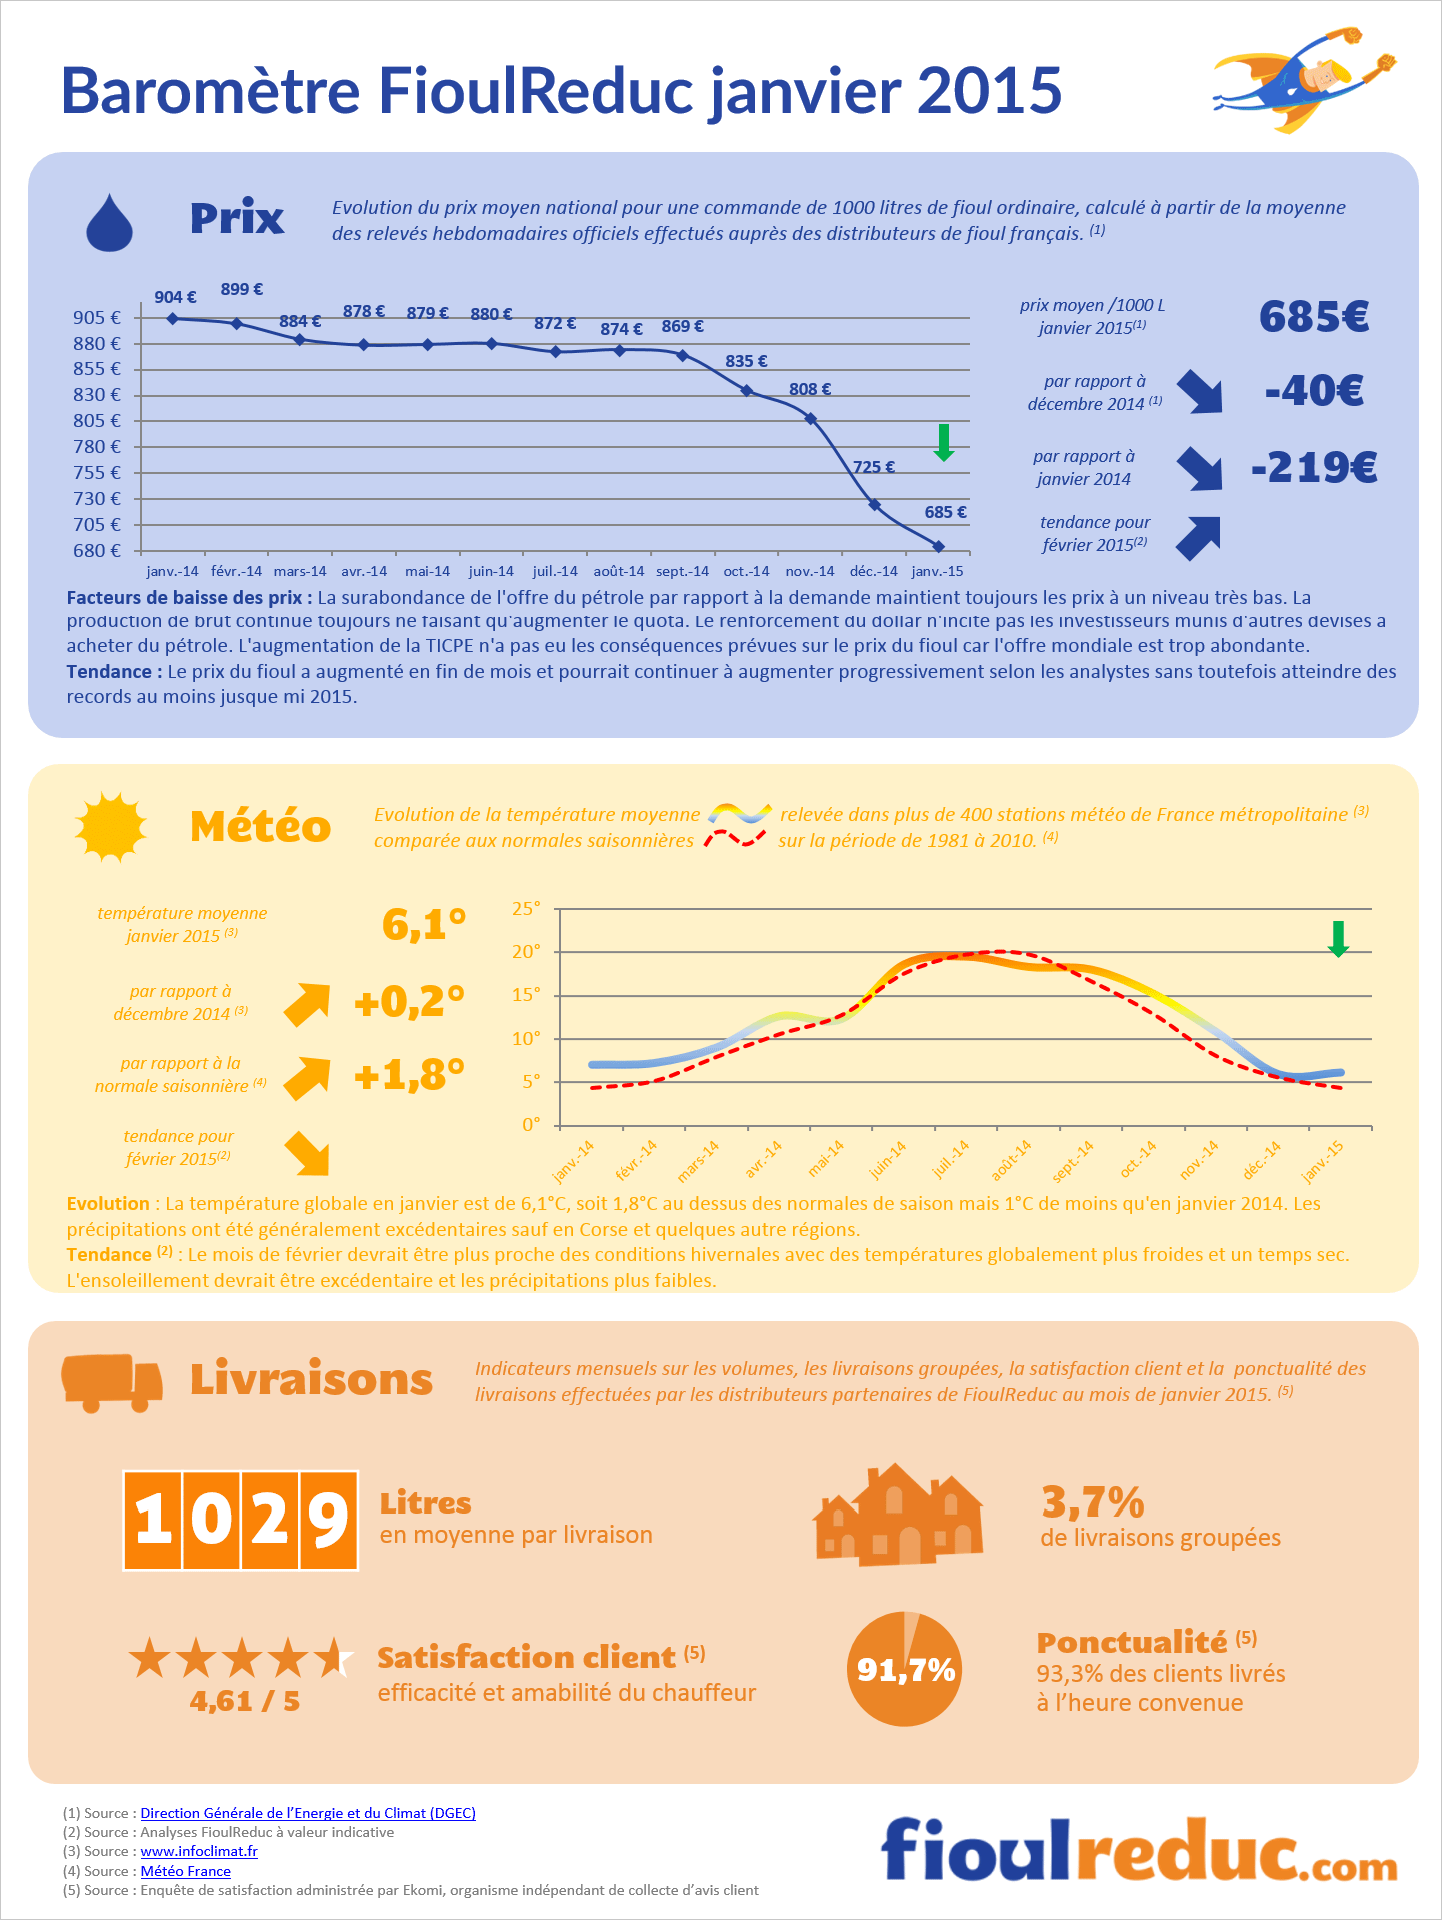 Baromètre des prix du fioul de janvier 2015